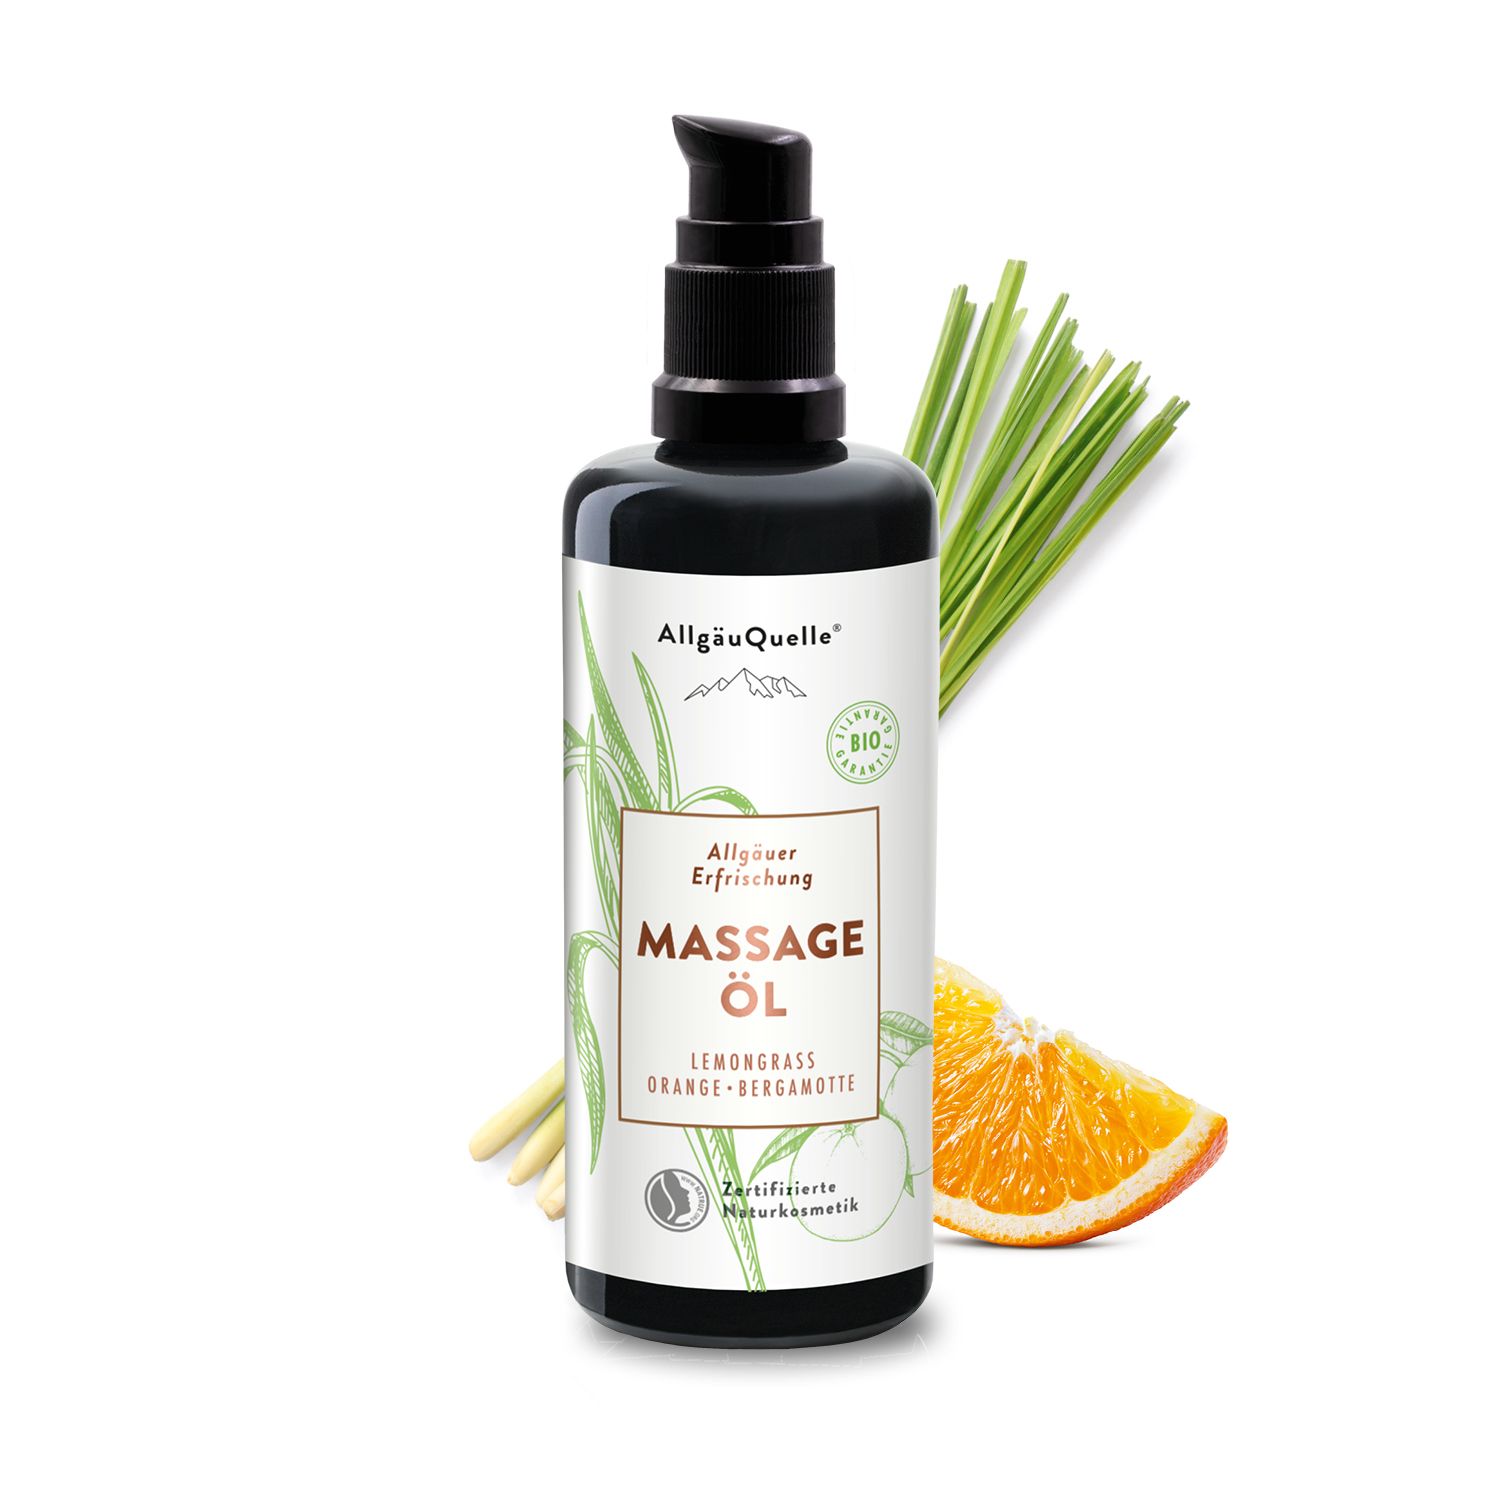 AllgäuQuelle BIO Massageöl 100% naturreine ätherische Ölen aus Lemongrass, Orange, Bergamotte, vegan